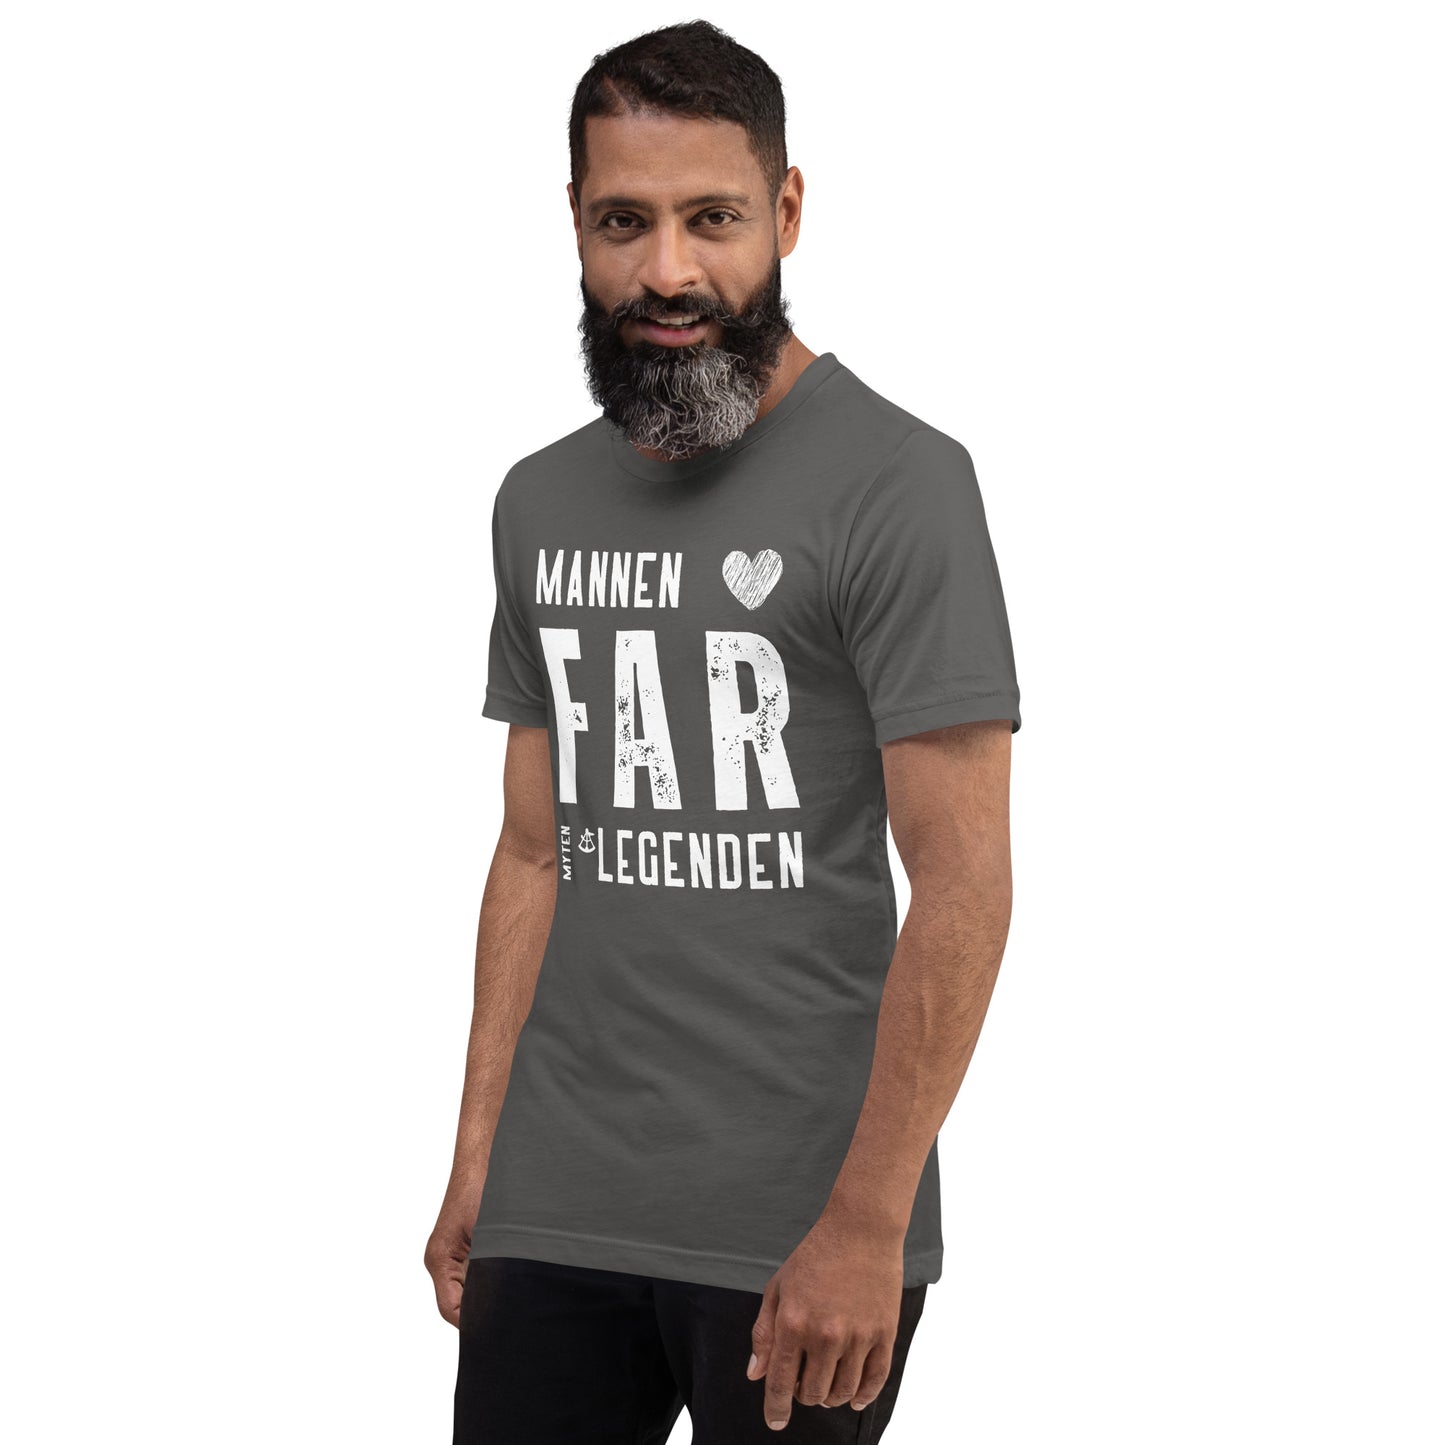 T-Shirt Herr - Mannen Far Legenden